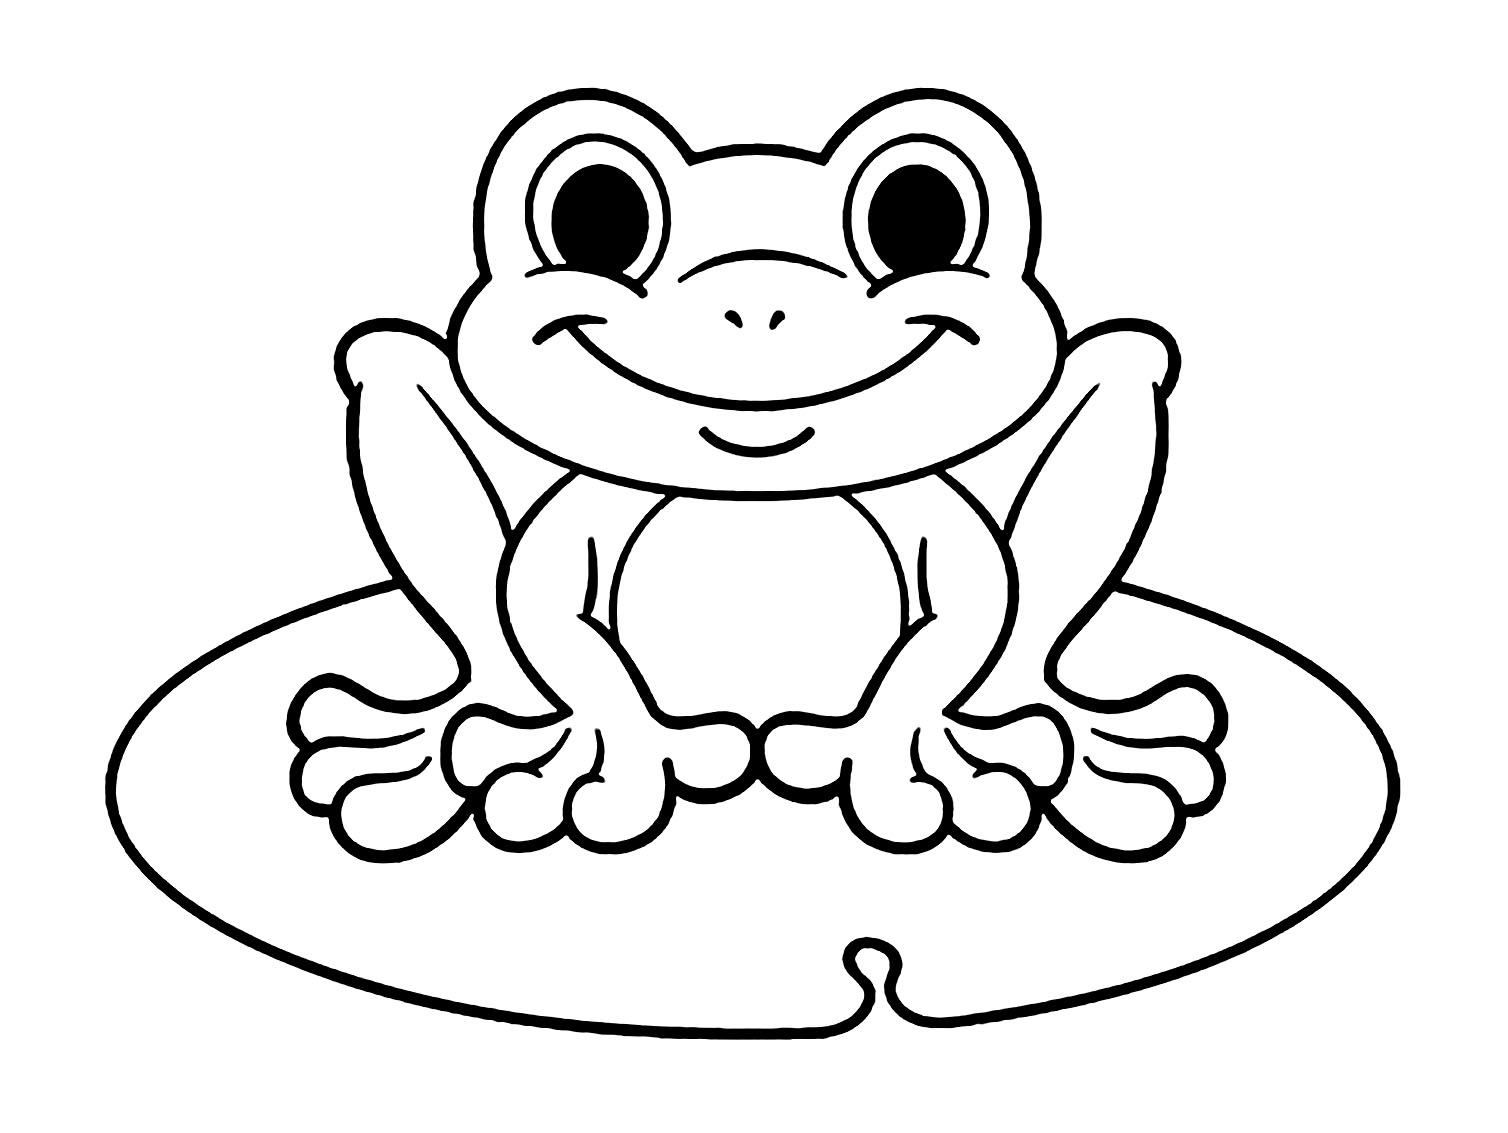 Tranh tô màu chú ếch có đôi mắt tròn